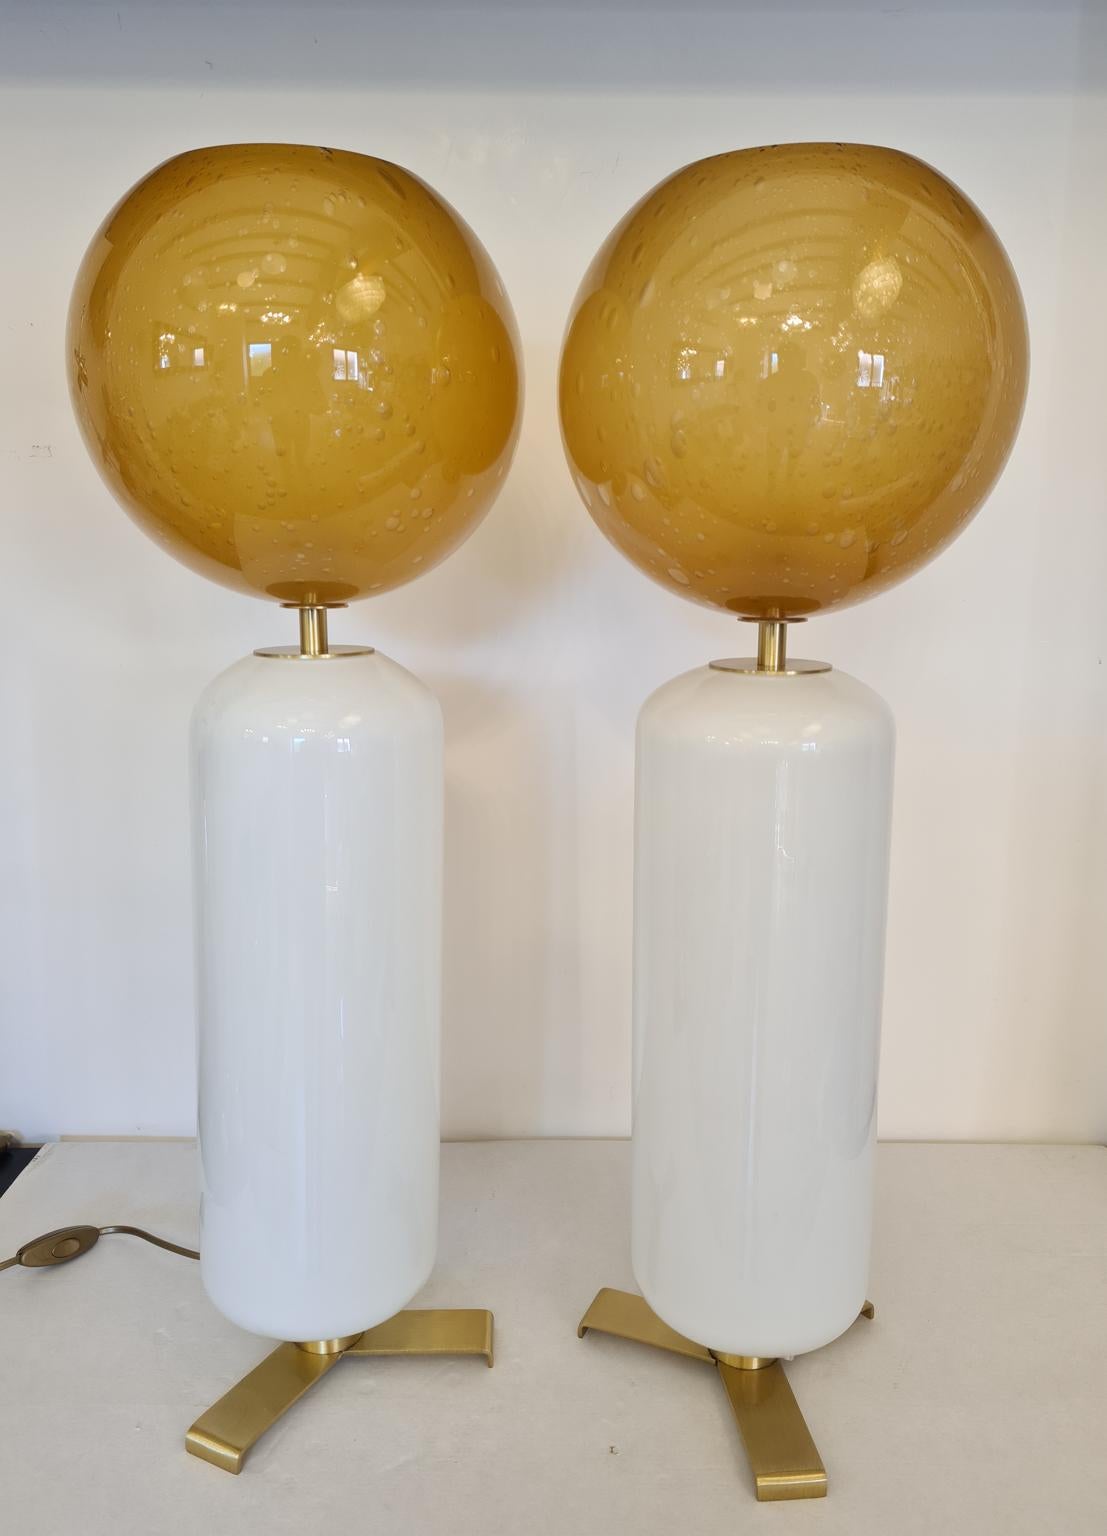 Exklusive Paar Murano Glas Tischlampen weiße Farbe mit Pulegoso Bernstein oberen Kugel.
Pulegoso Verarbeitung sind Blasen im Inneren der Farbe.
Die Lampe wurde mit großer Sorgfalt und Präzision von unserem Glasermeister Alberto Donà aus Murano